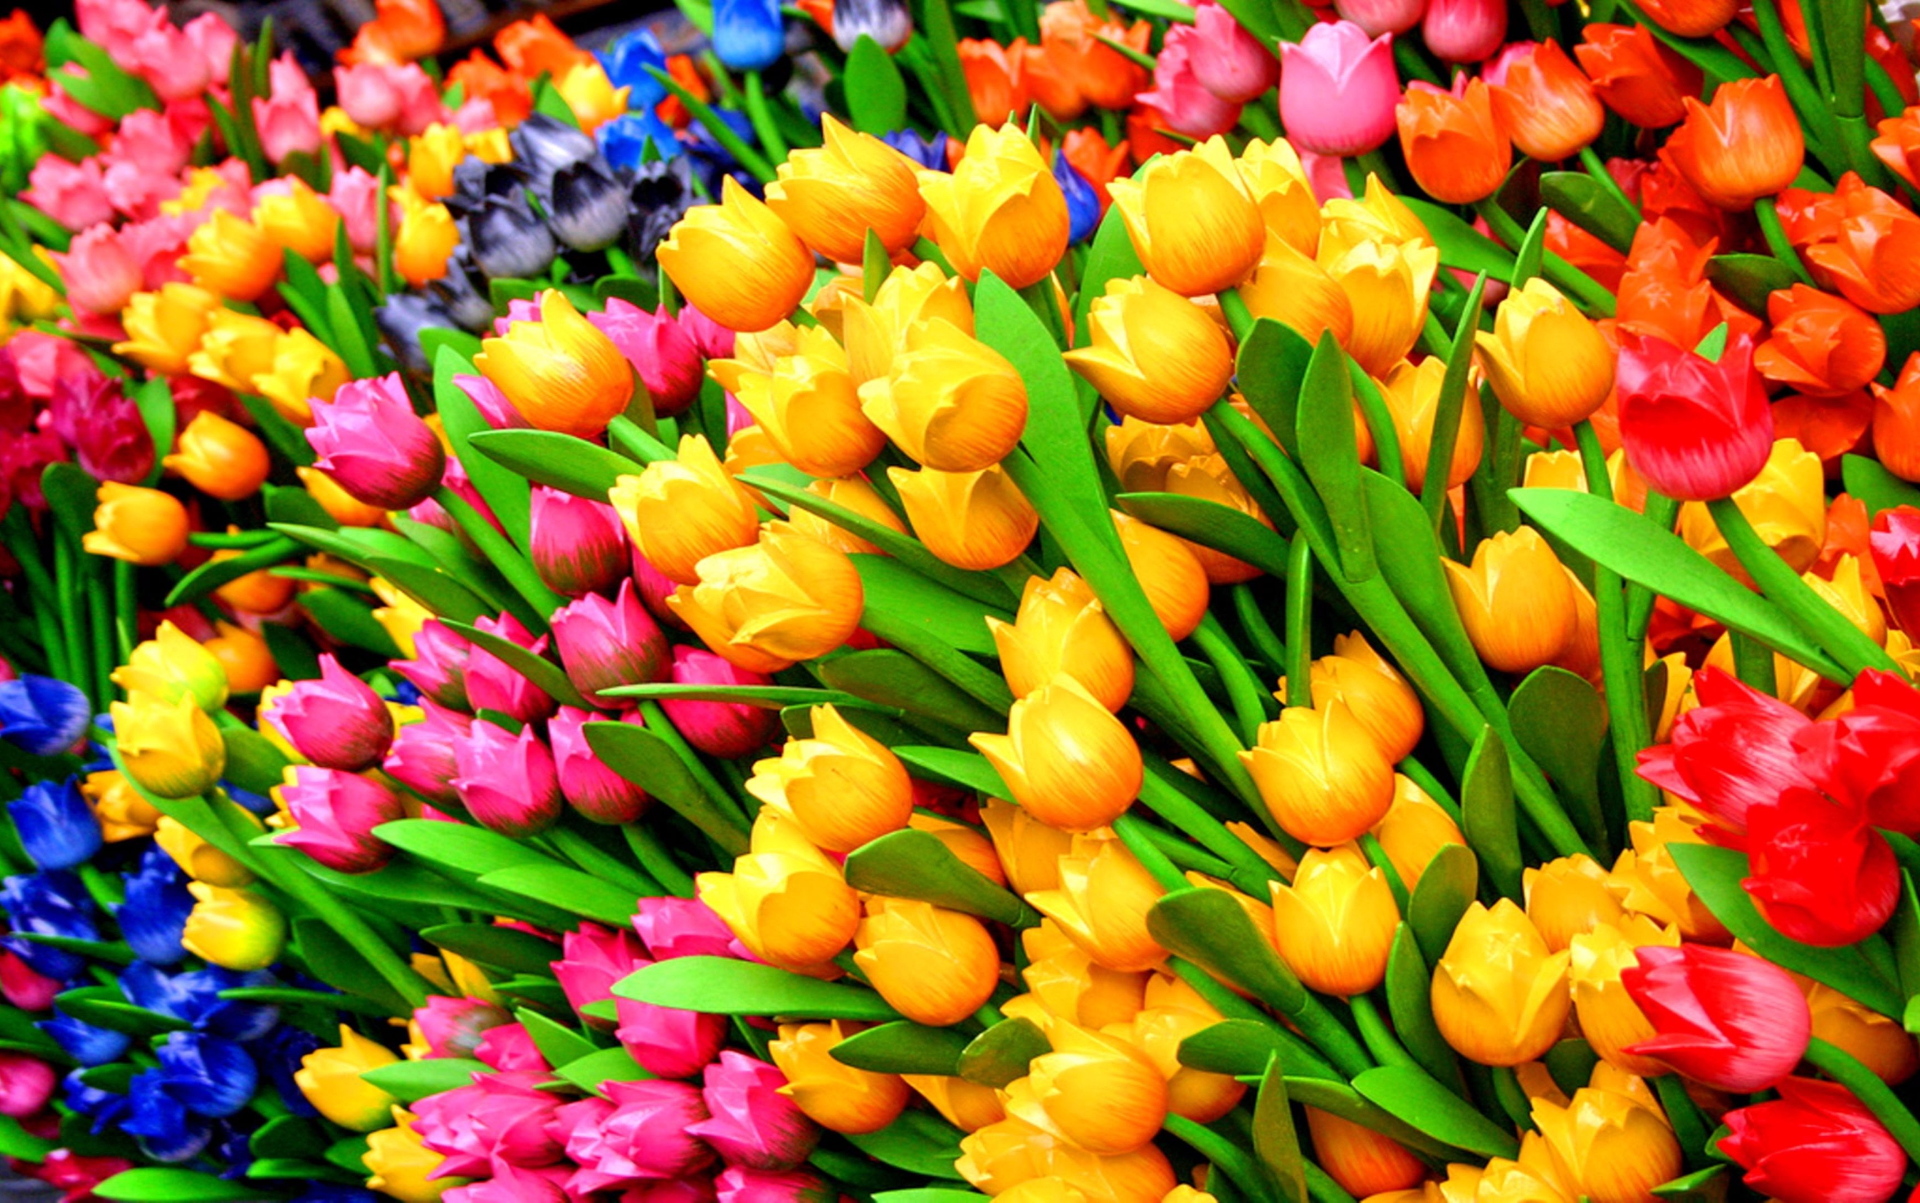 Descarga gratuita de fondo de pantalla para móvil de Flores, Flor, Flor Rosa, Colores, Vistoso, Tulipán, Flor Amarilla, Flor Roja, Tierra/naturaleza, Flor Naranja, Flor Azul.